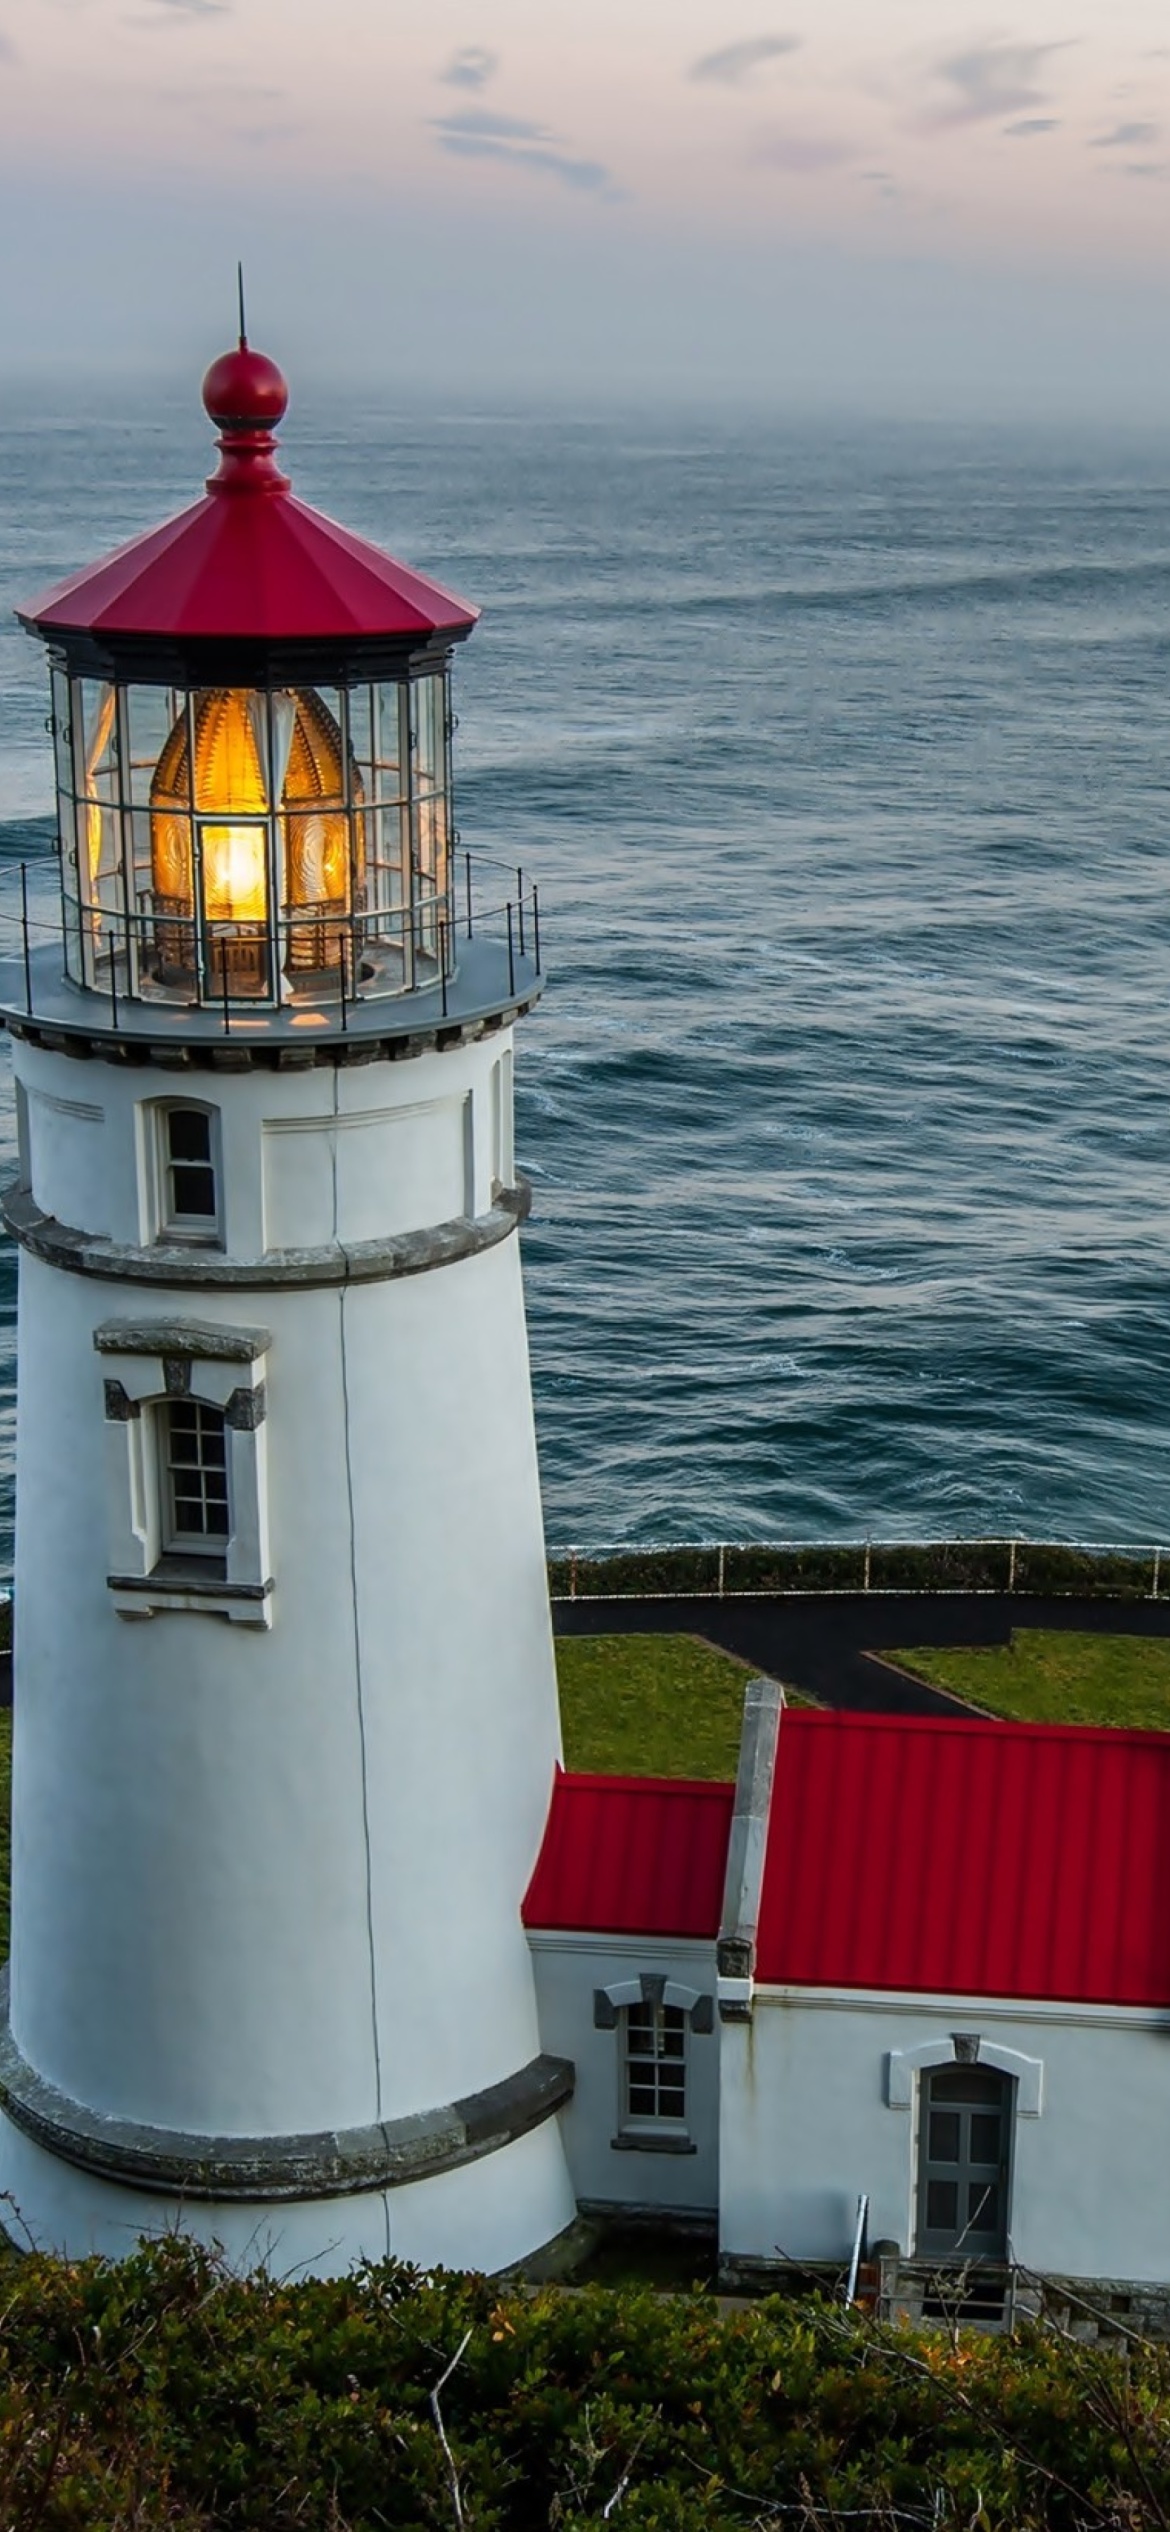 Sfondi Lighthouse at North Sea 1170x2532